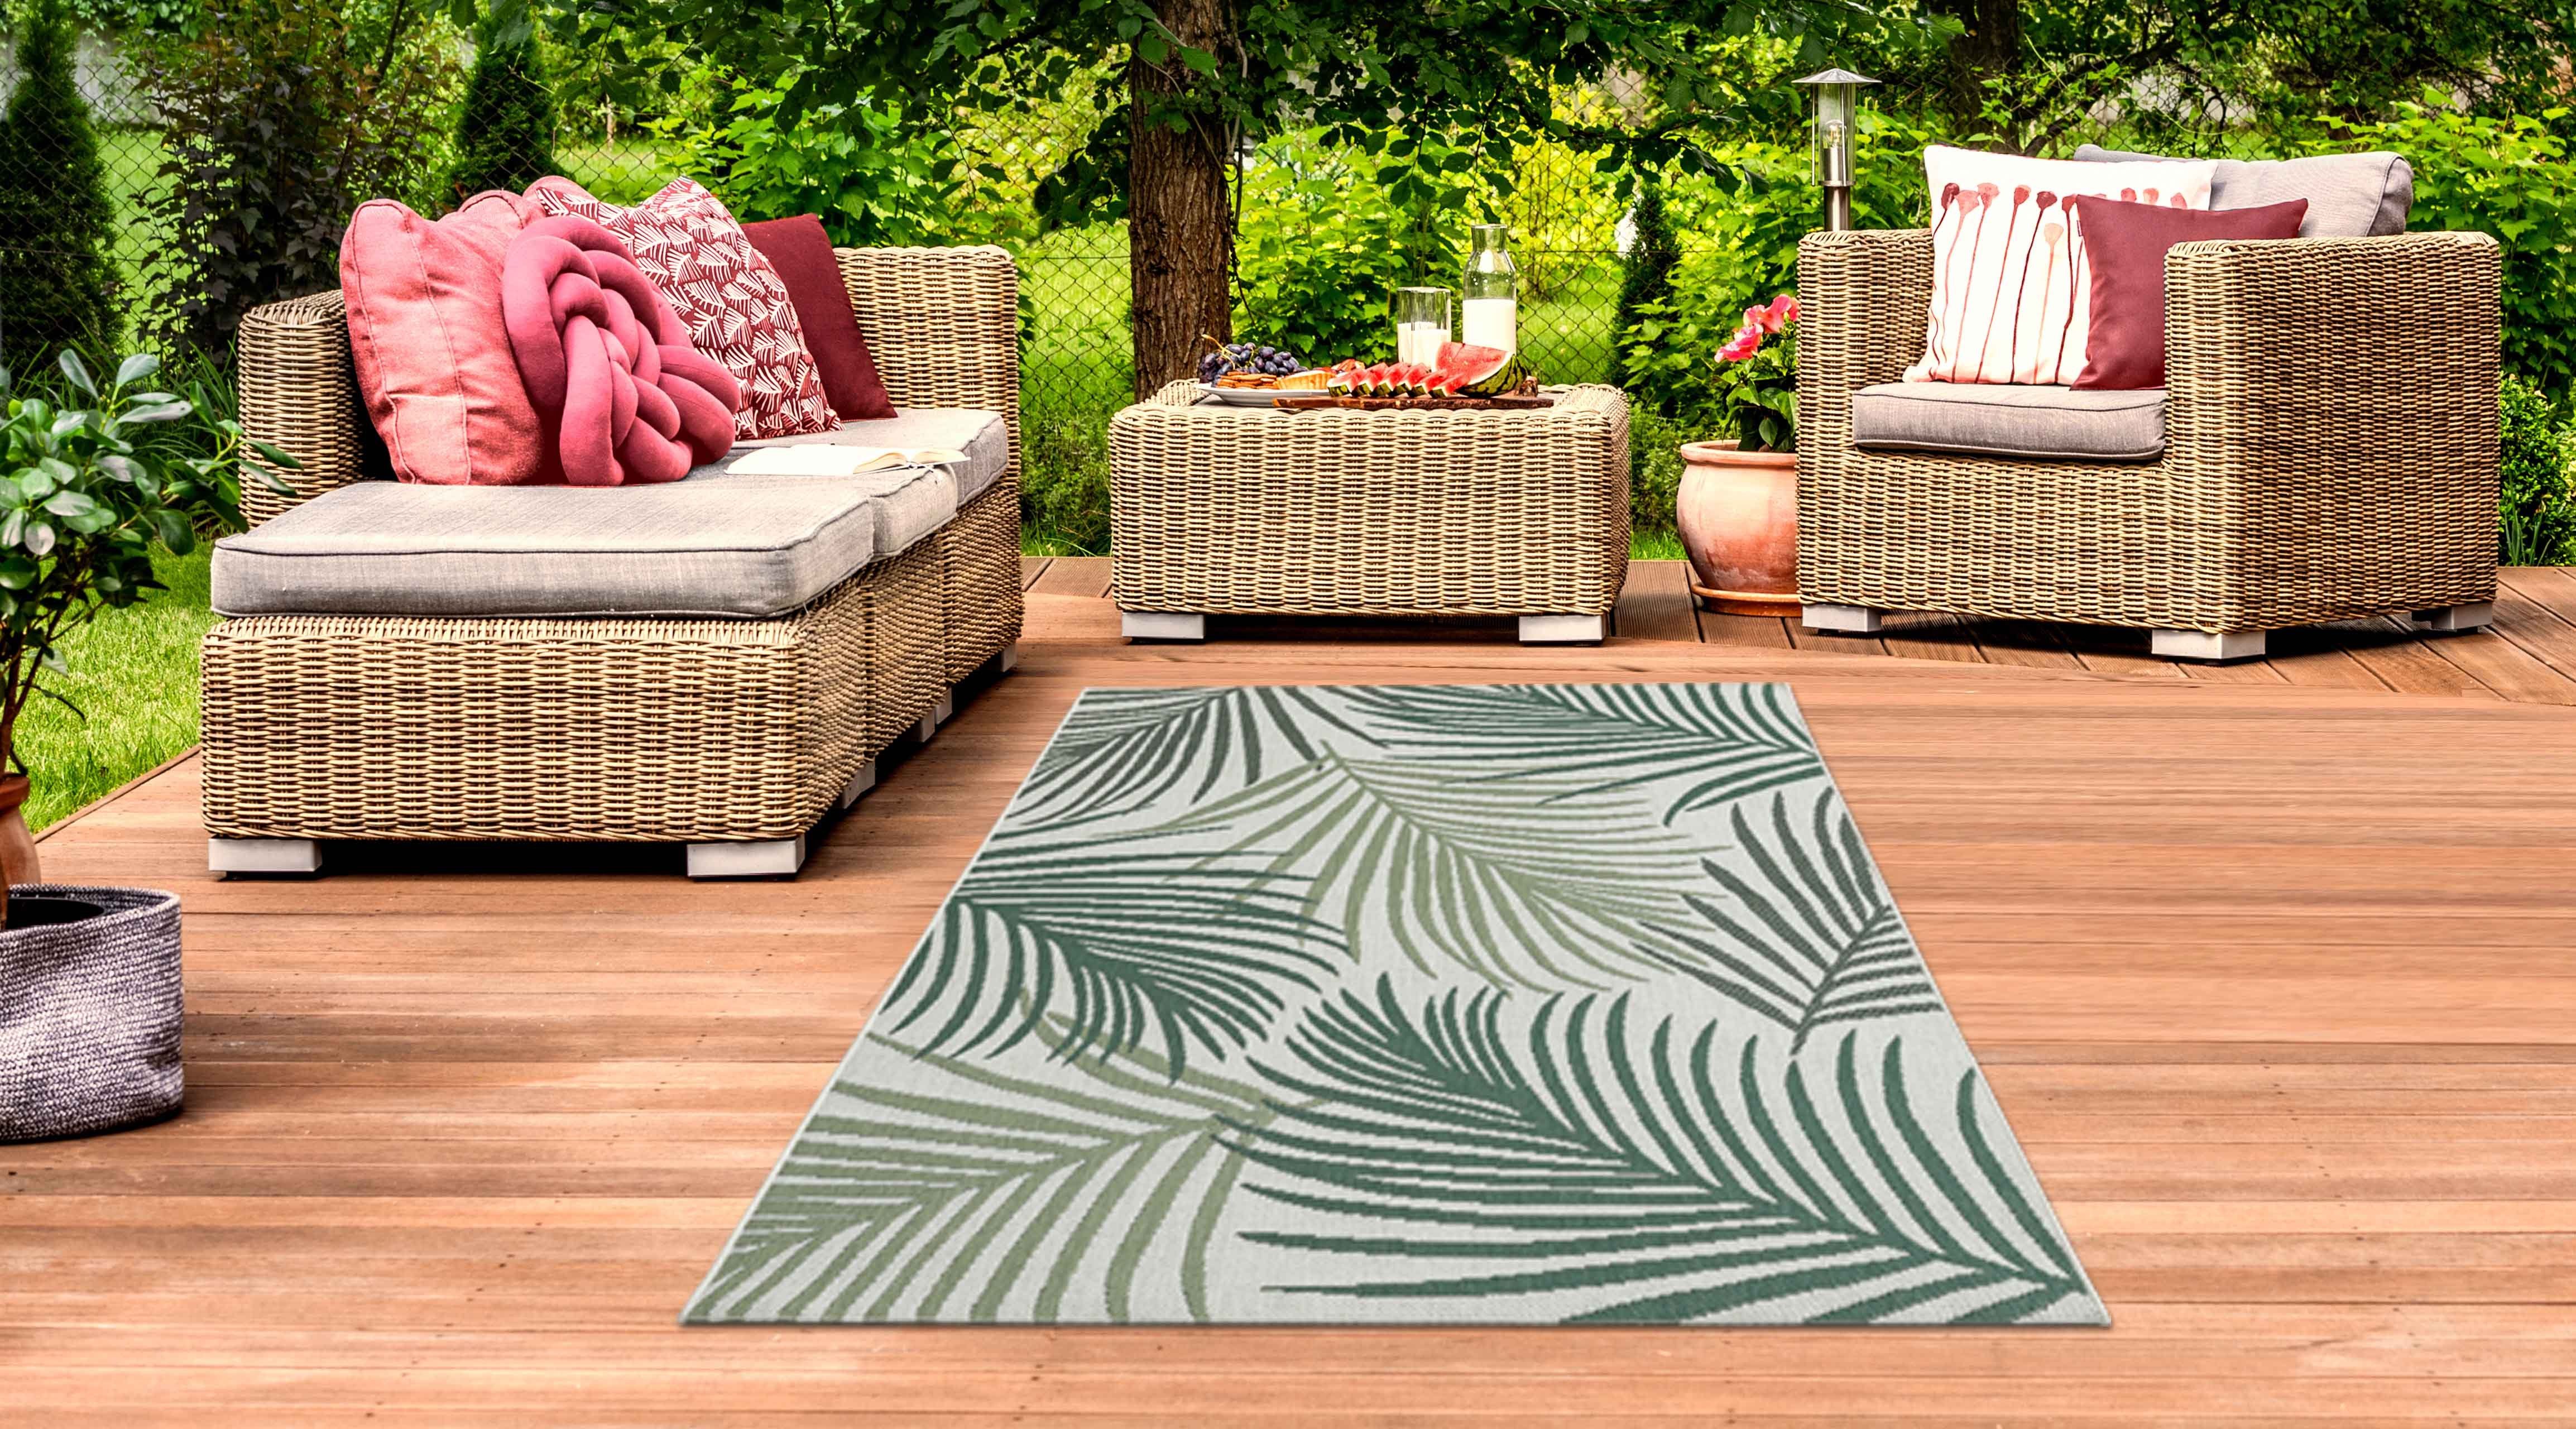 & rechteckig, Outdoorteppich sandfarbe, in Outdoor mm Höhe: TeppichHome24, 5 Sisal In- Teppich auf Palmenzweige Optik grün